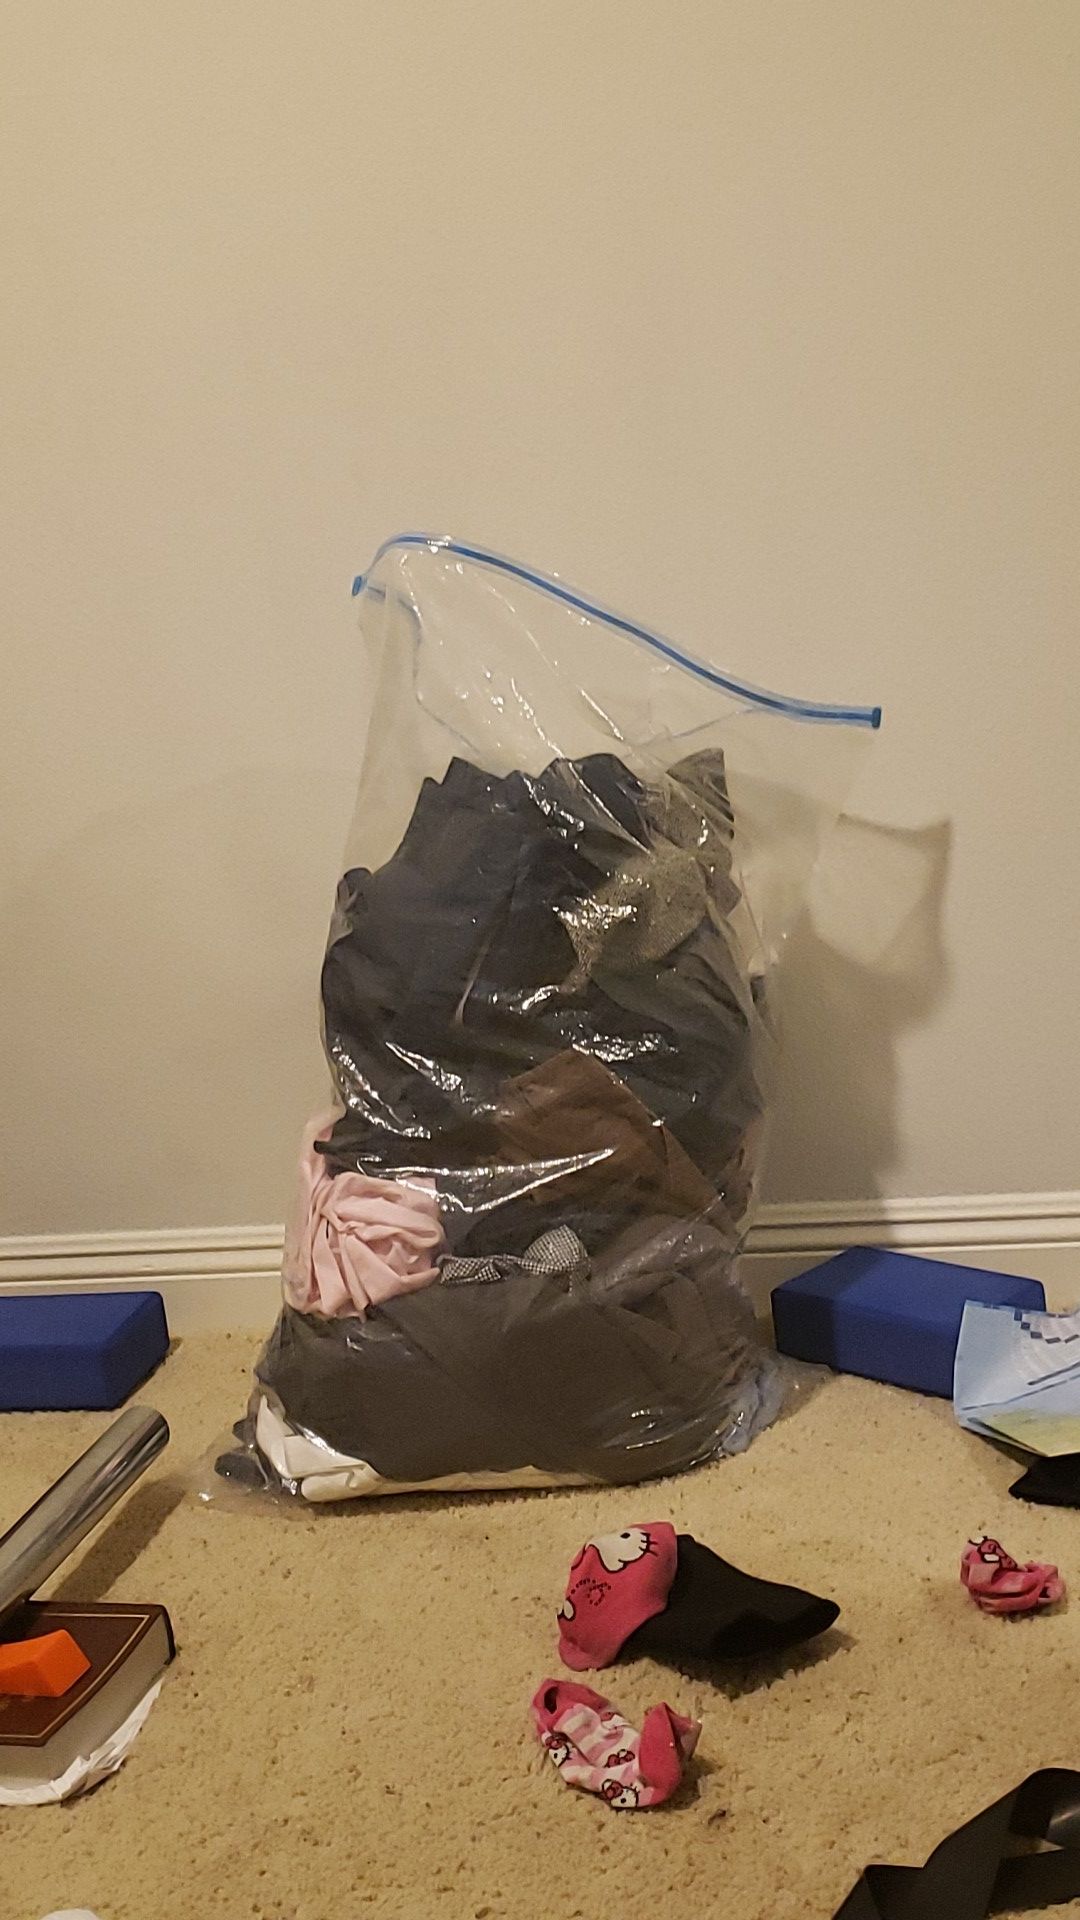 Bag of clothes